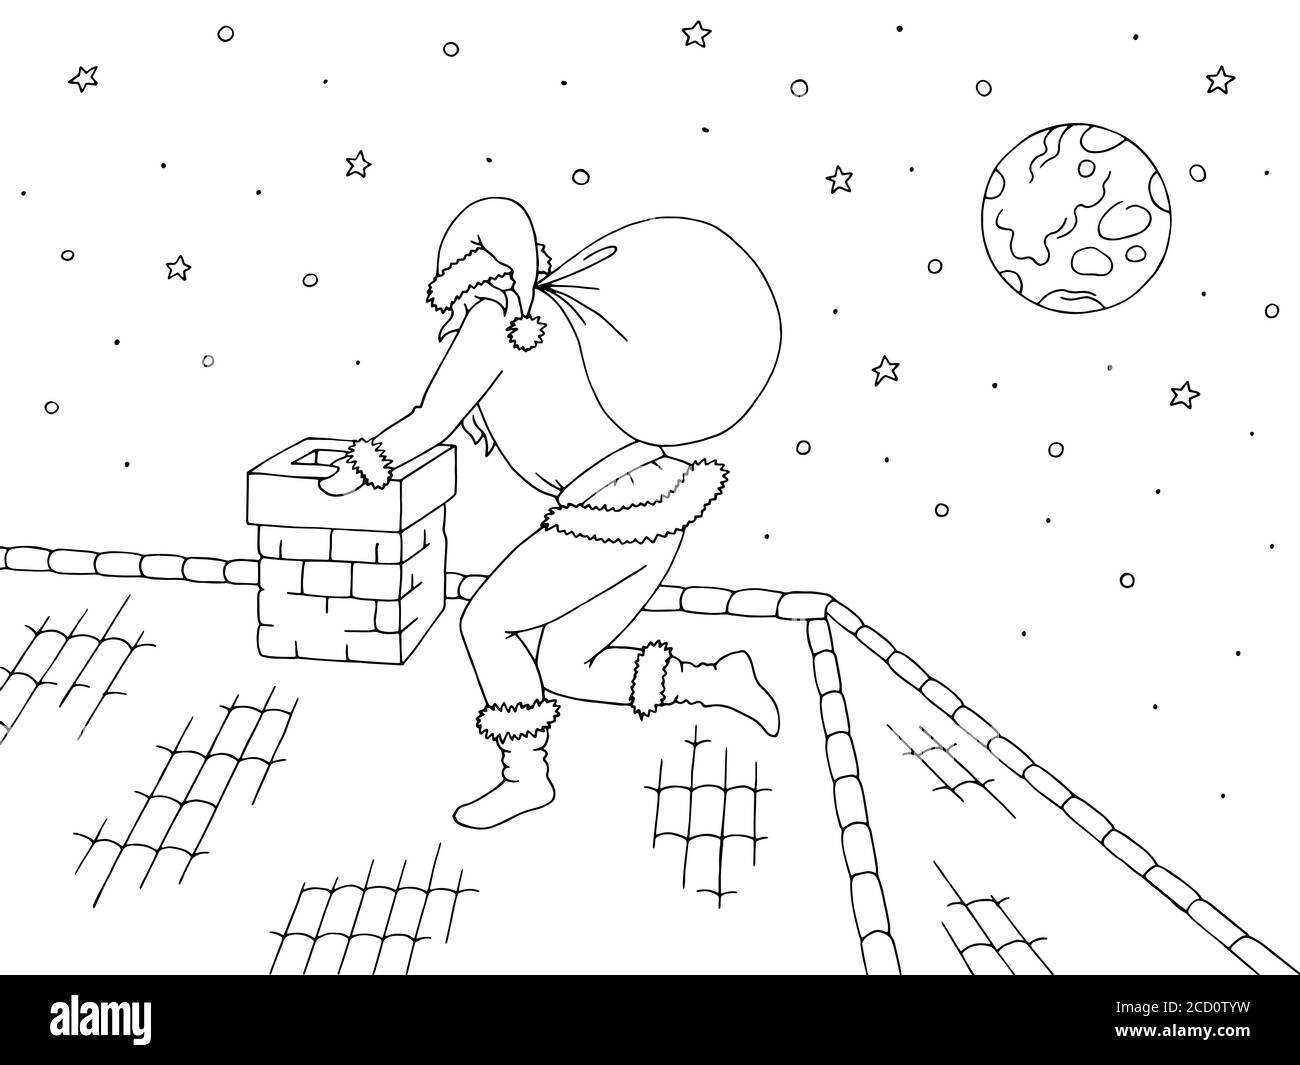 Image de toit noir blanc esquisse vecteur d'illustration. Le Père Noël monte dans la cheminée Illustration de Vecteur